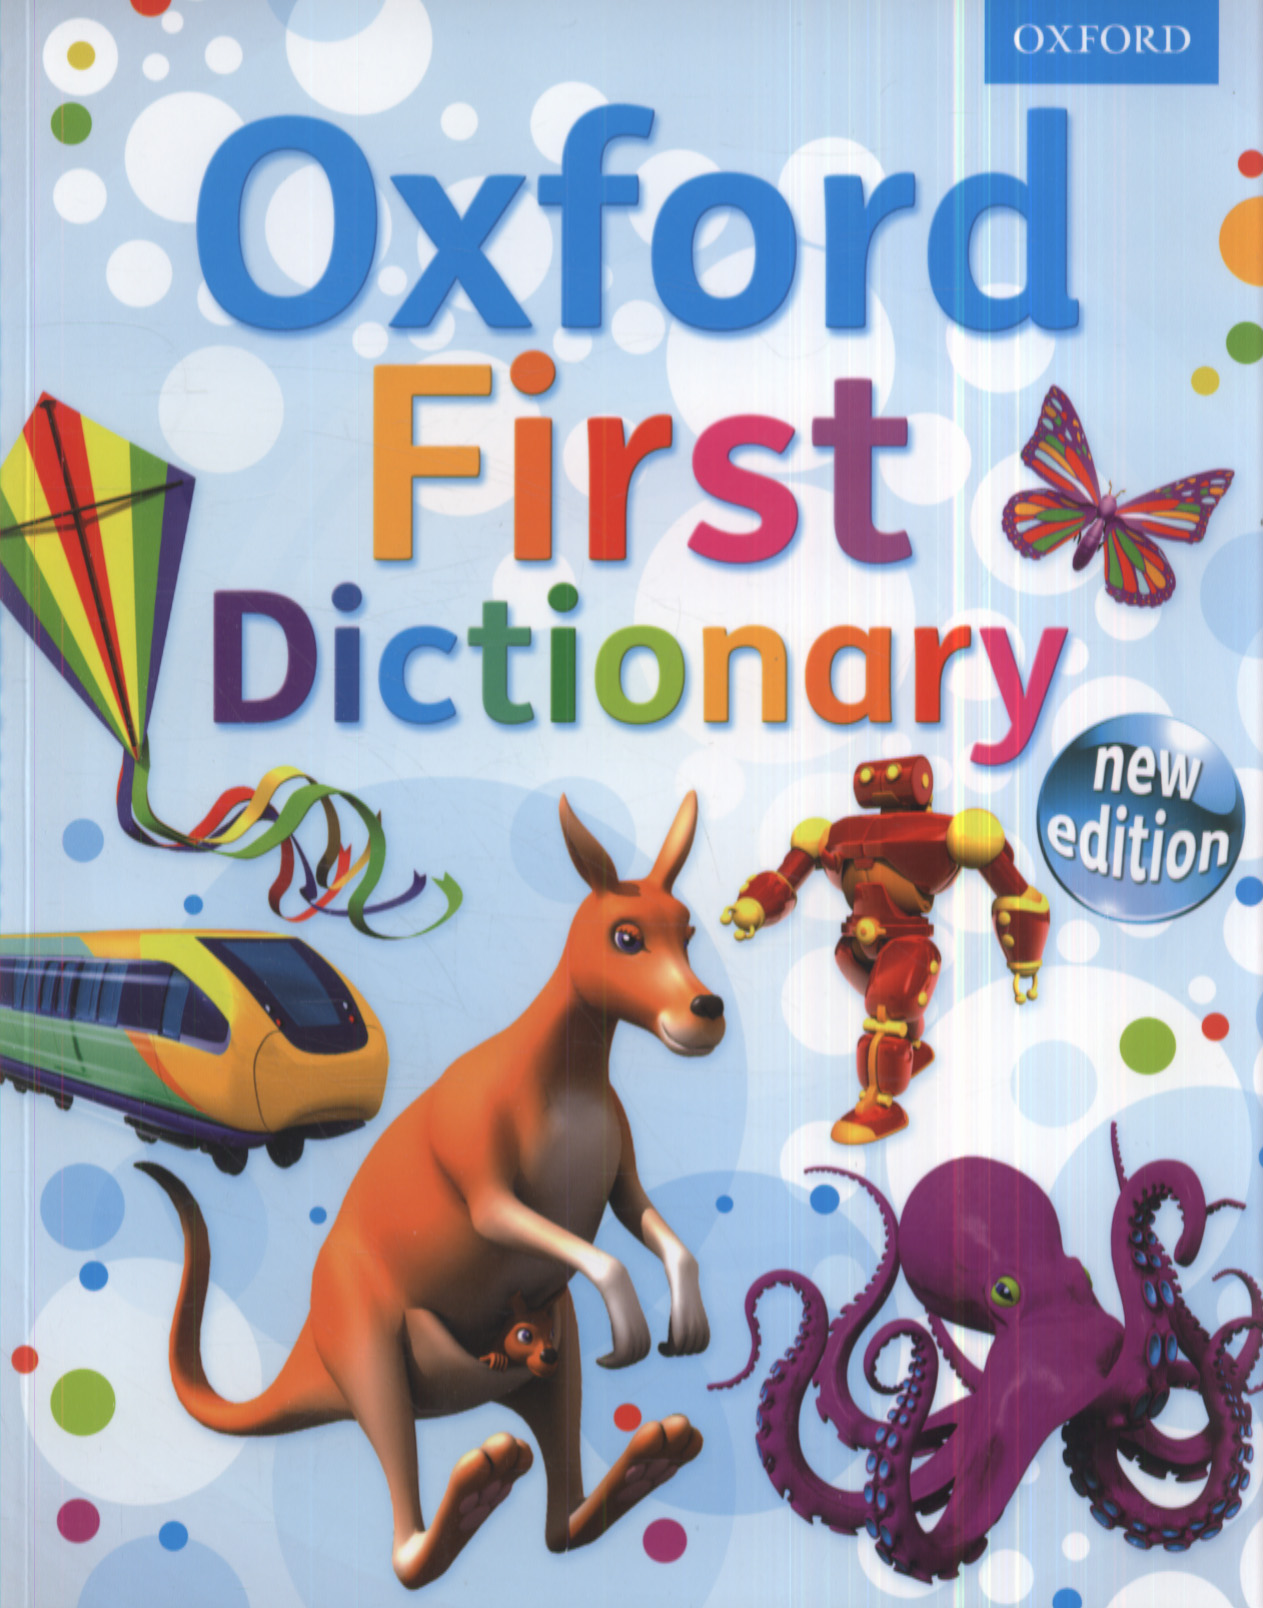 homework oxford dictionary